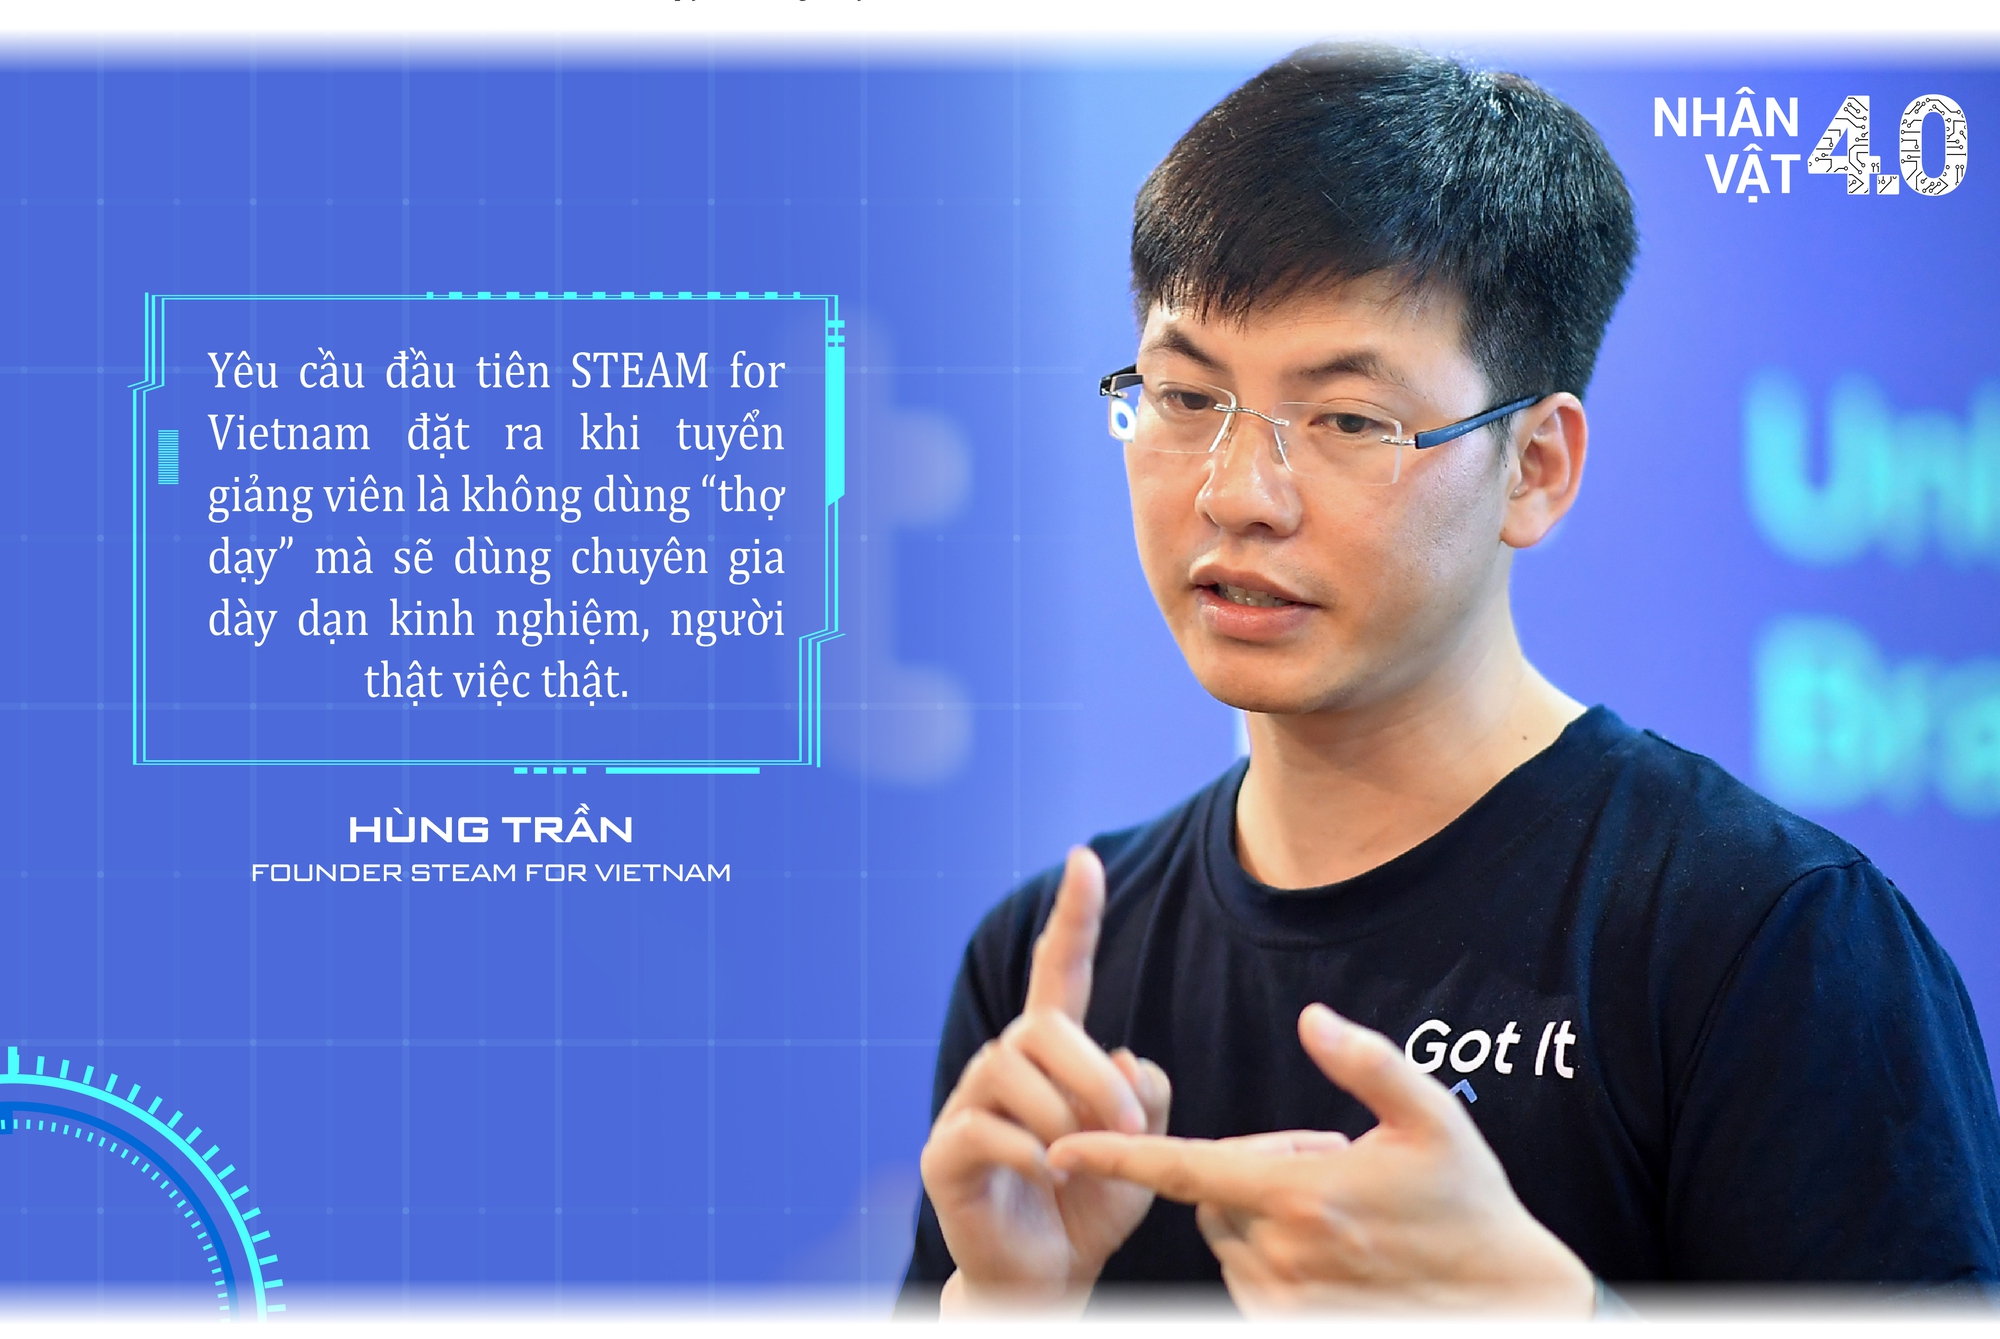 ‘Startup giáo dục’ kỳ lạ: Thiết kế như show truyền hình, mời chuyên gia NASA, Facebook, Google, Microsoft… dạy lập trình miễn phí cho trẻ em Việt Nam - Ảnh 4.